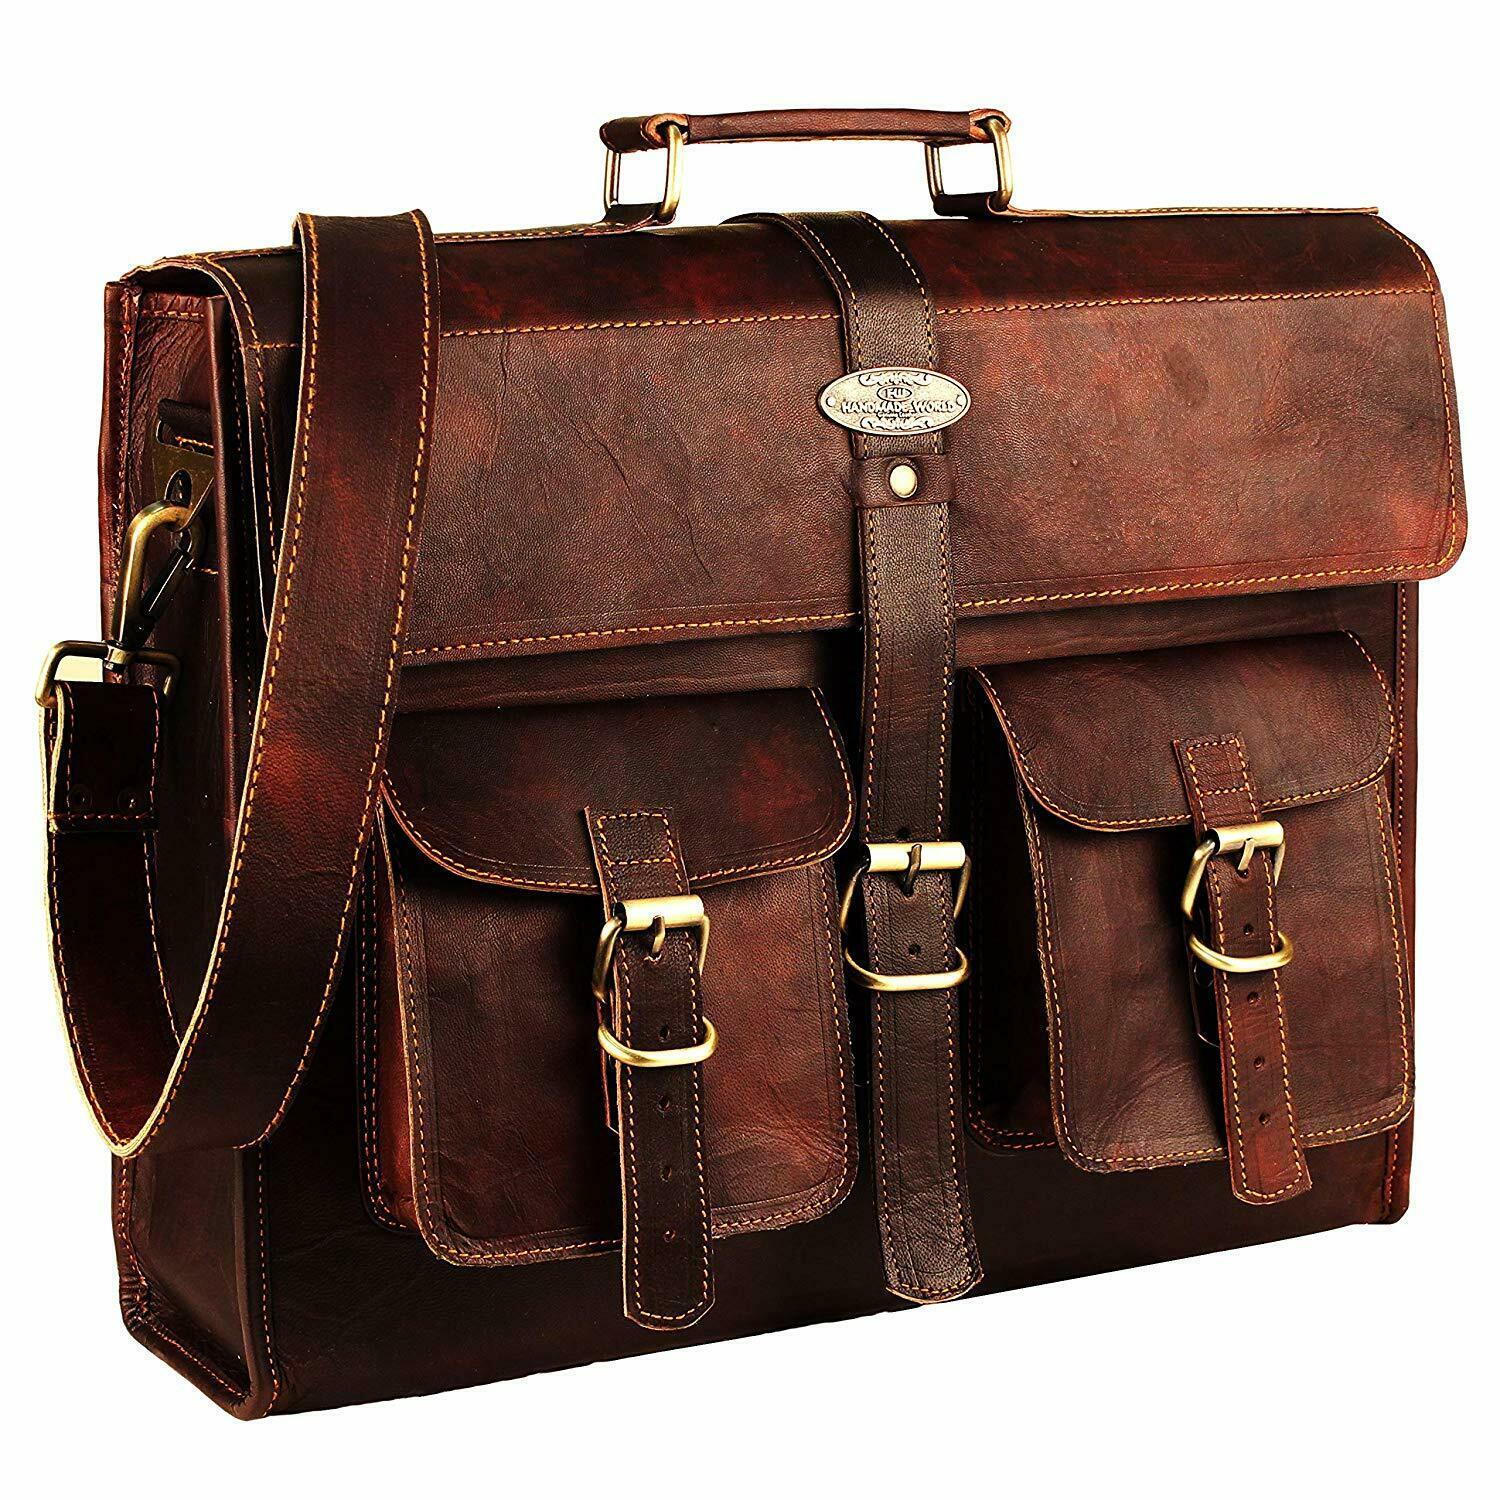 Brown Vintage Cross-Over The shoulder Bag For Business Trips, Work ...